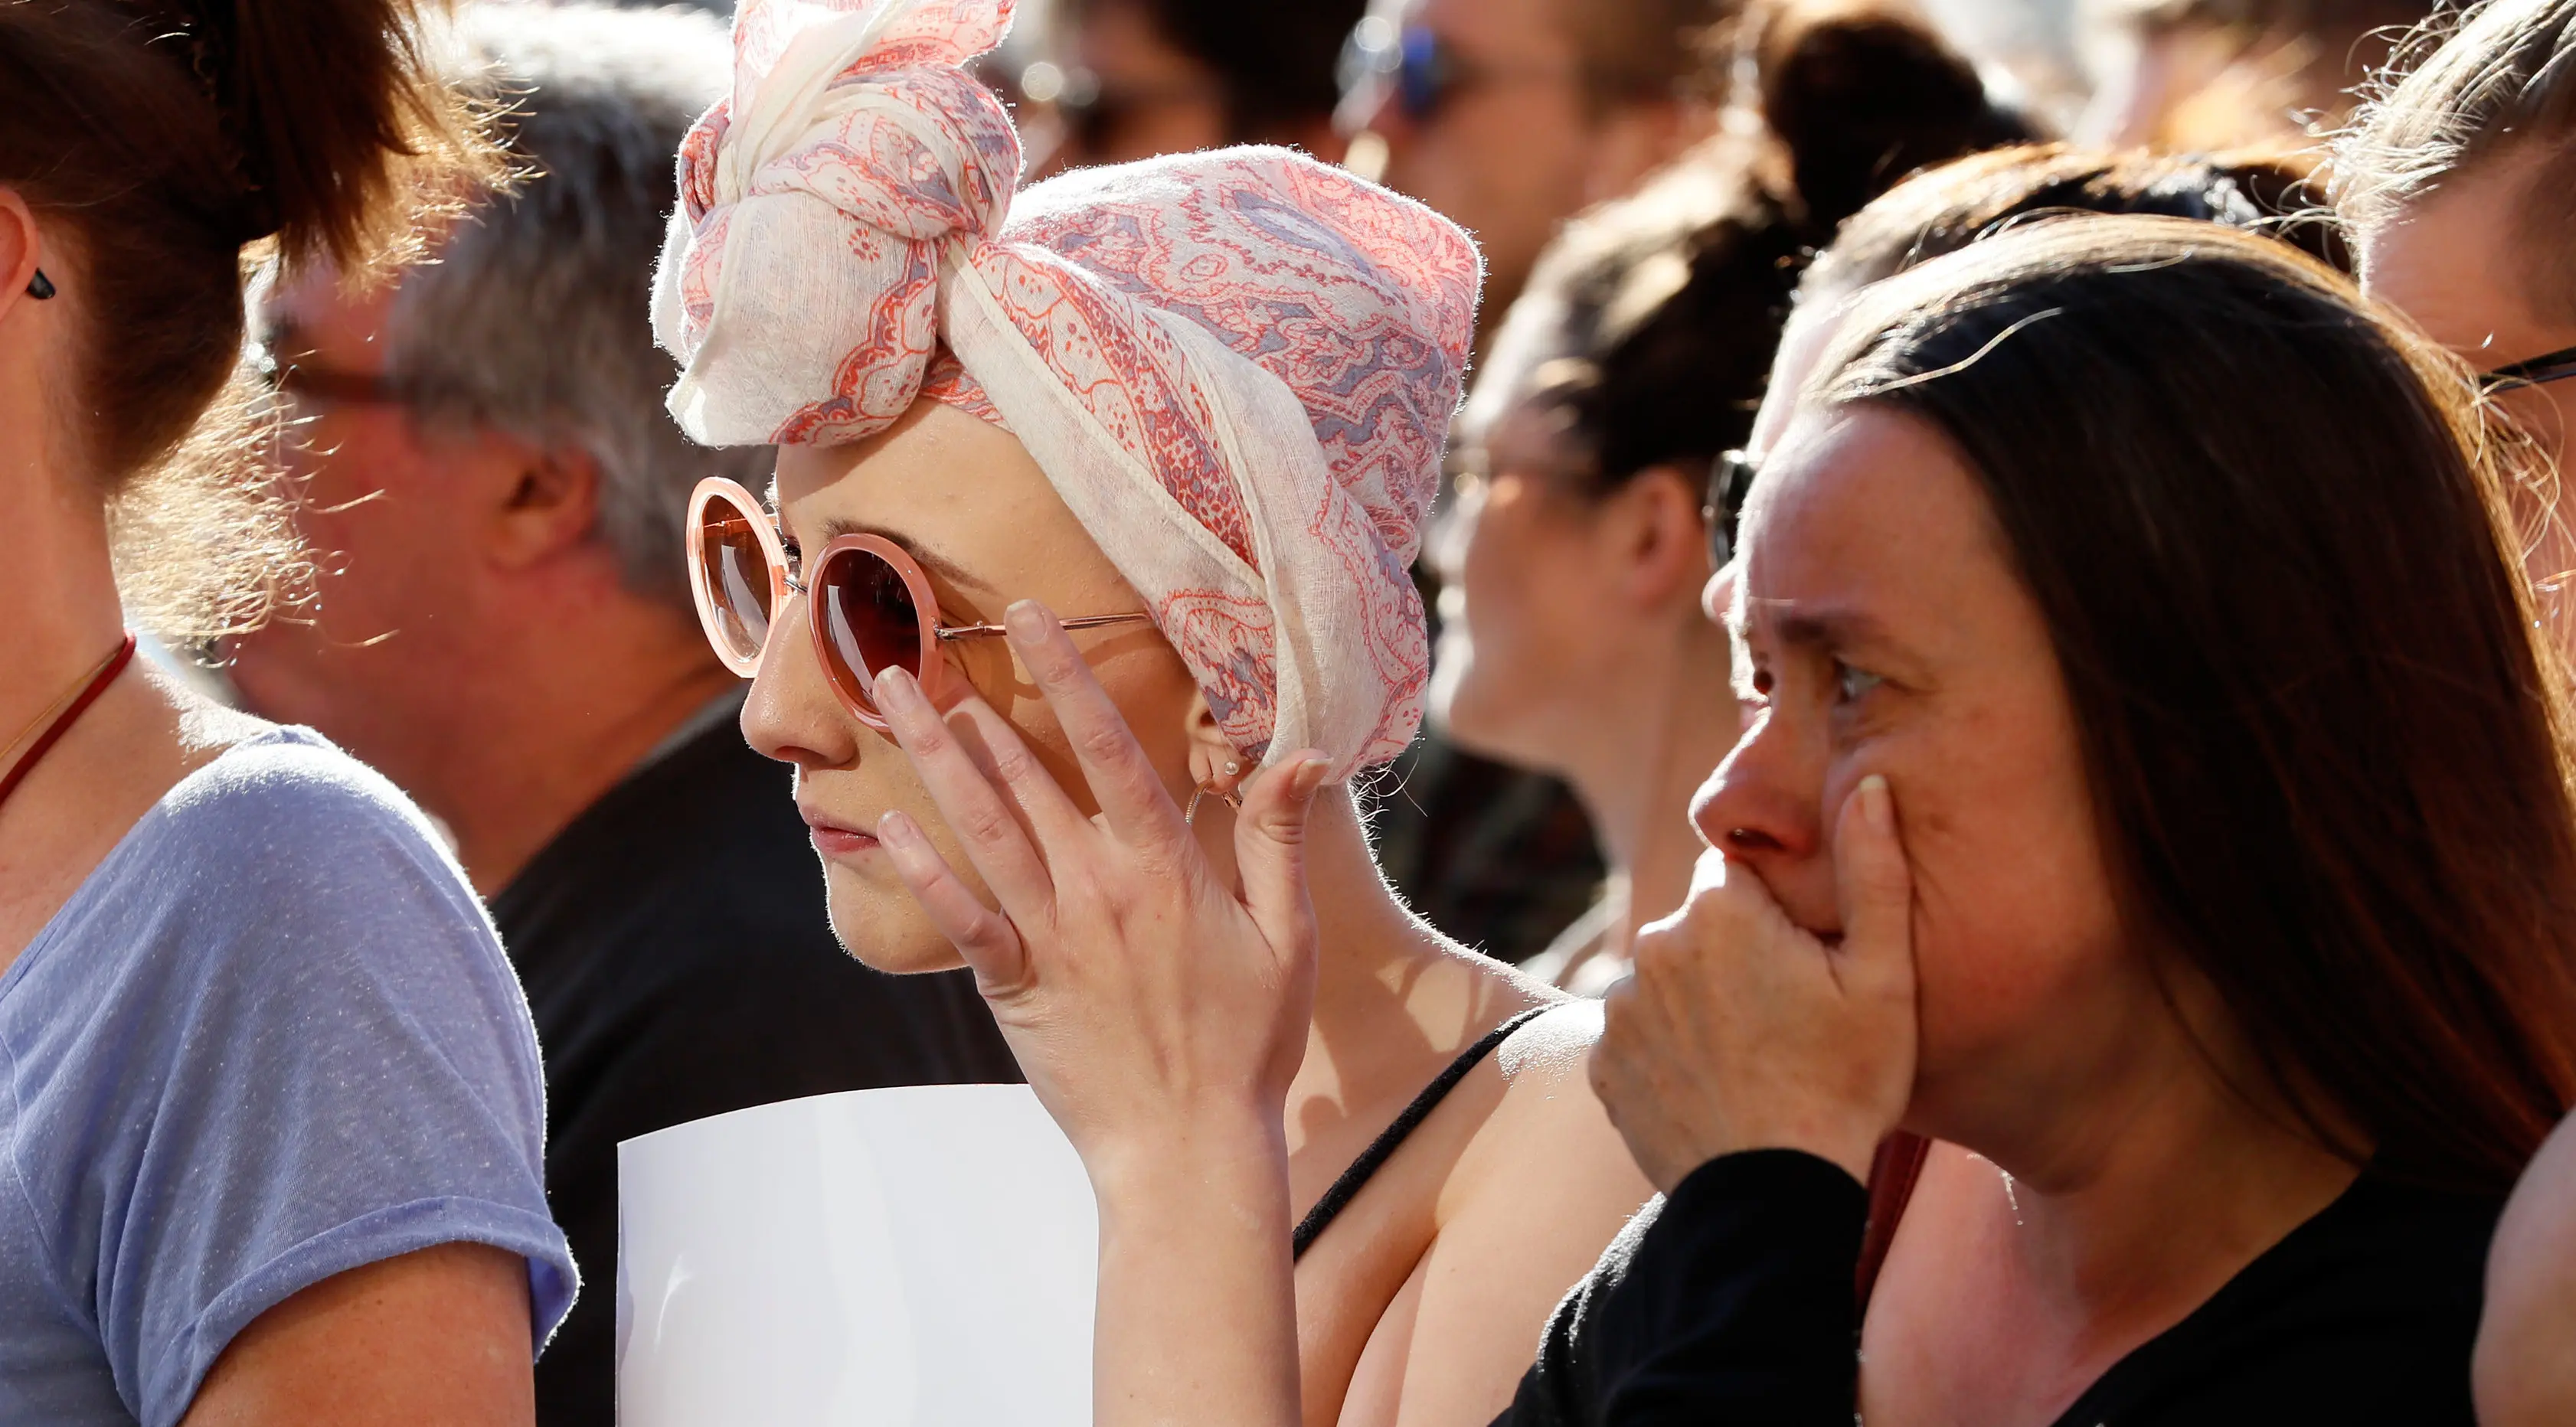 Sejumlah wanita bereaksi saat menghadiri doa bersama di Albert Square, pusat kota Manchester, Inggris, Selasa (23/5). Ribuan warga menunjukkan solidaritas terhadap korban bom di konser Ariana Grande yang menewaskan 22 orang. (AP Photo/Kirsty Wigglesworth)